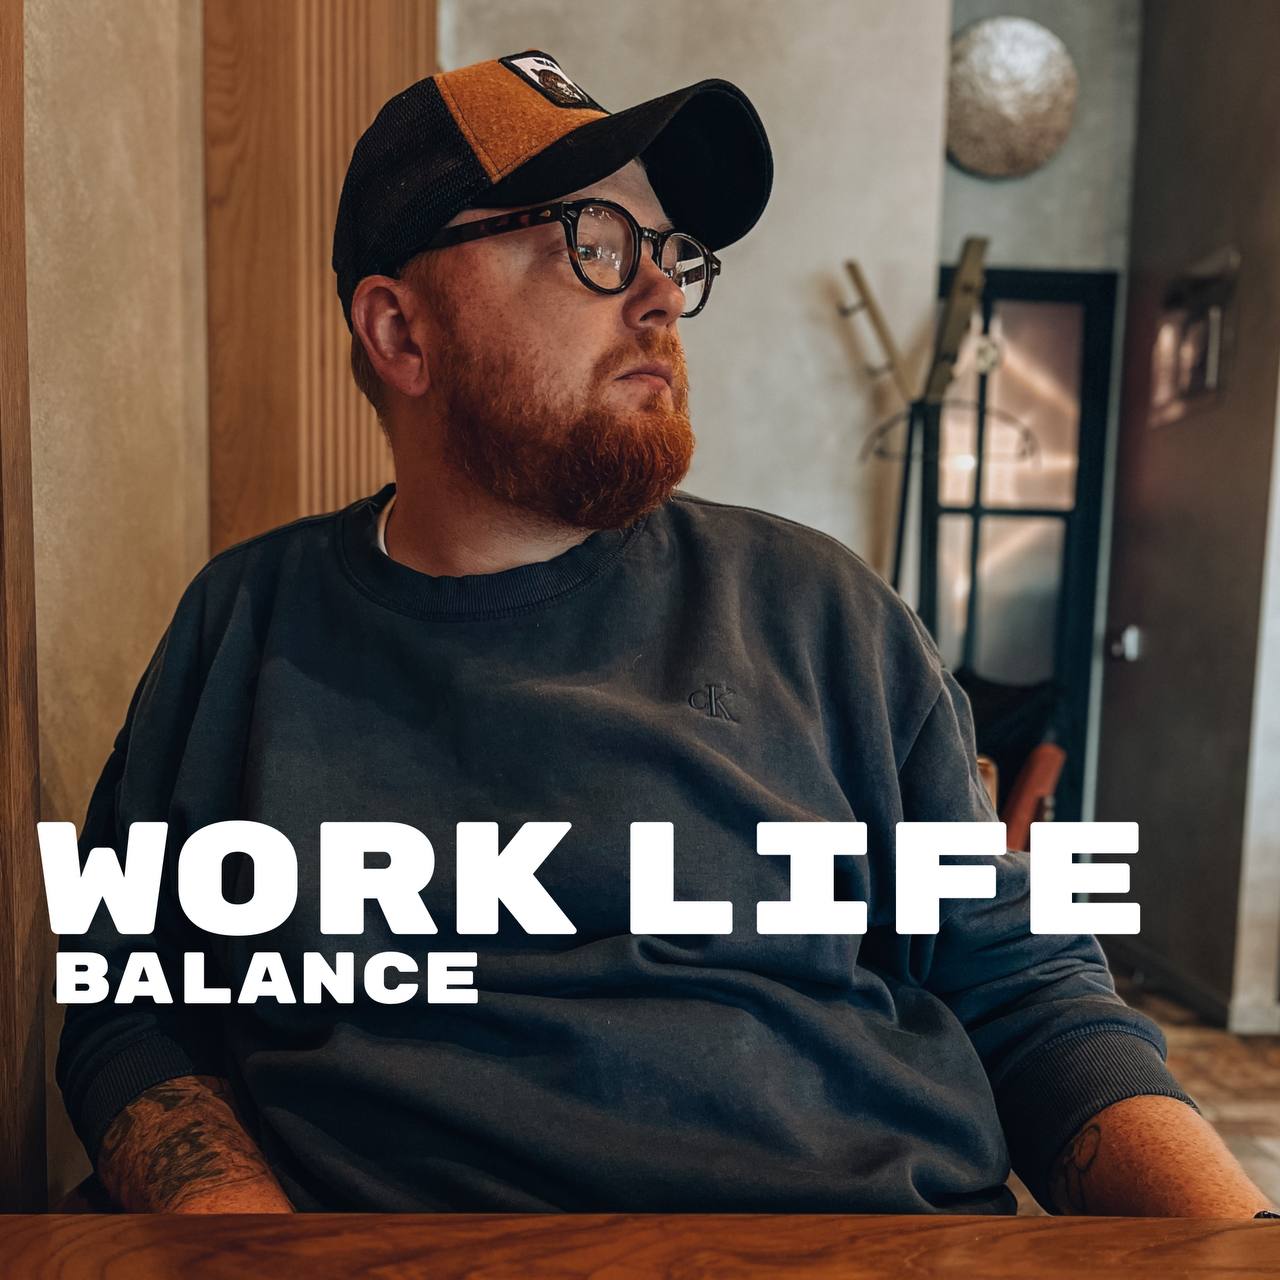 Вы сейчас просматриваете Work life balance